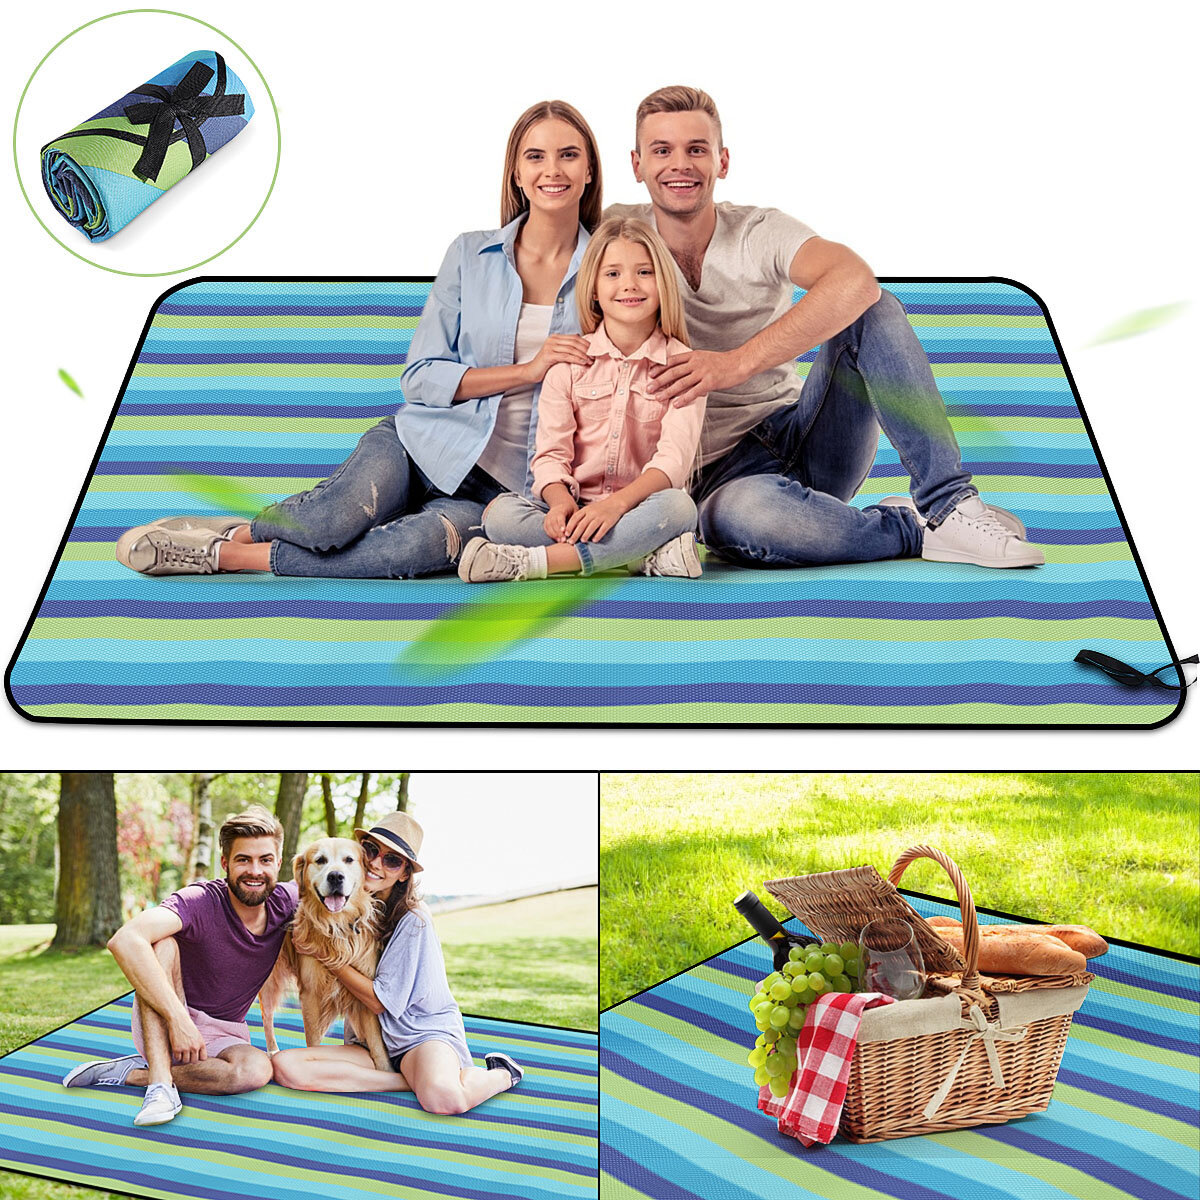 50x200cm suvaiye matı, plaj, kamp ve açık hava seyahatleri için katlanabilir su geçirmez piknik örtüsü.